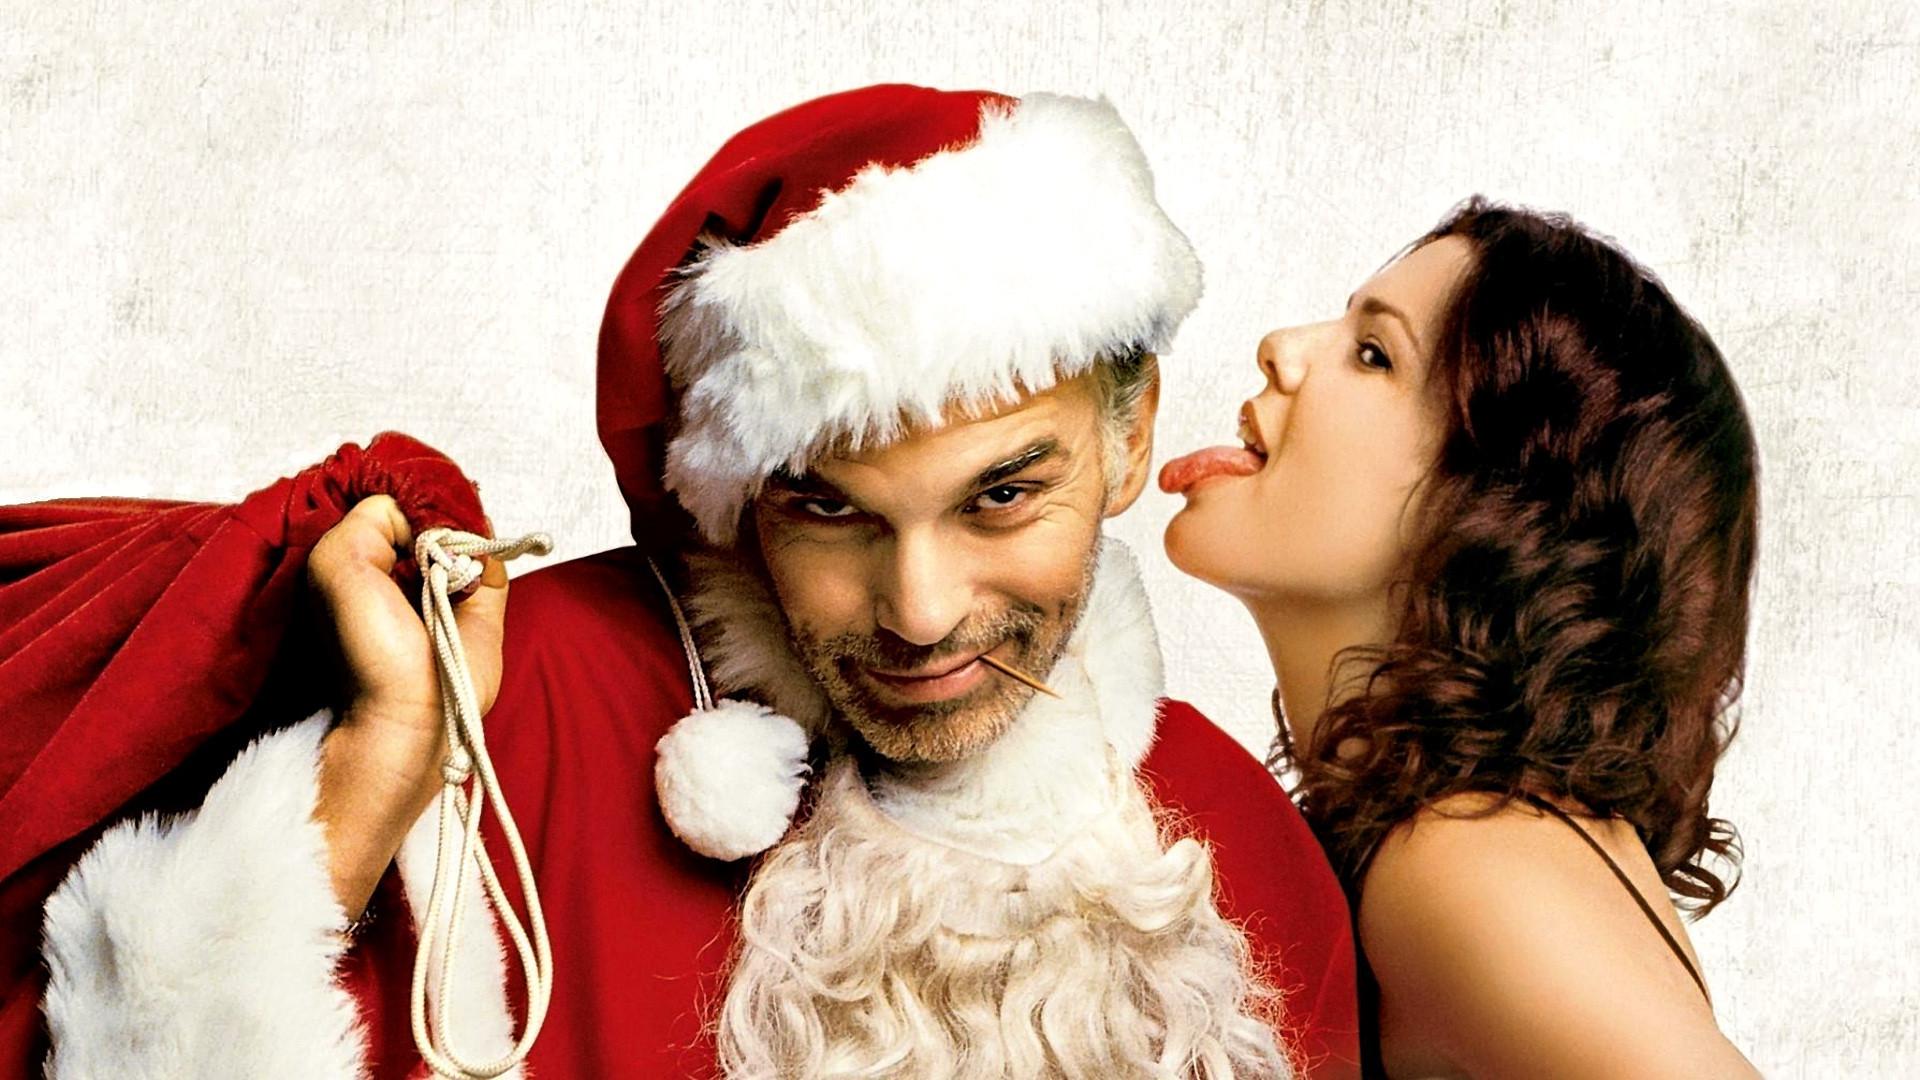 bad santa, Comedy, Christmas, Bad, Santa Wallpapers HD / Desktop and